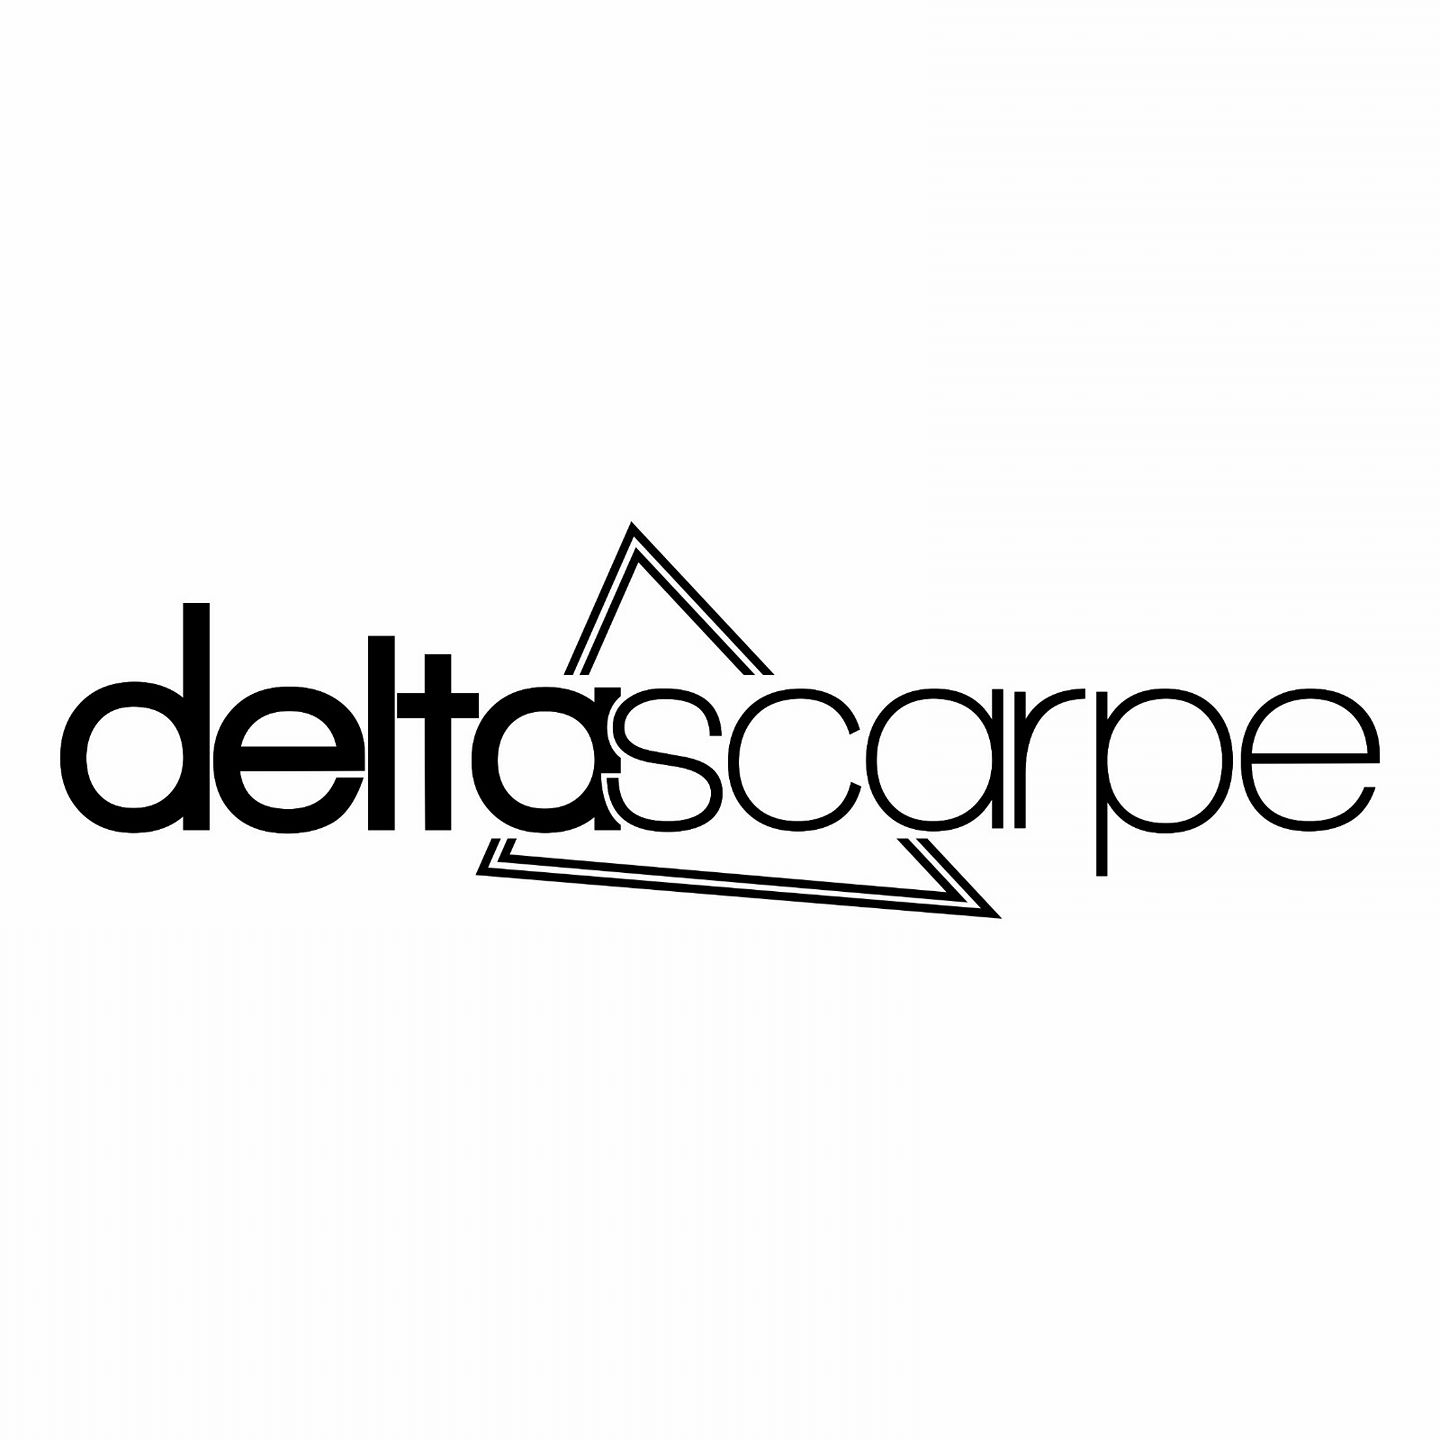 DeltaScarpe